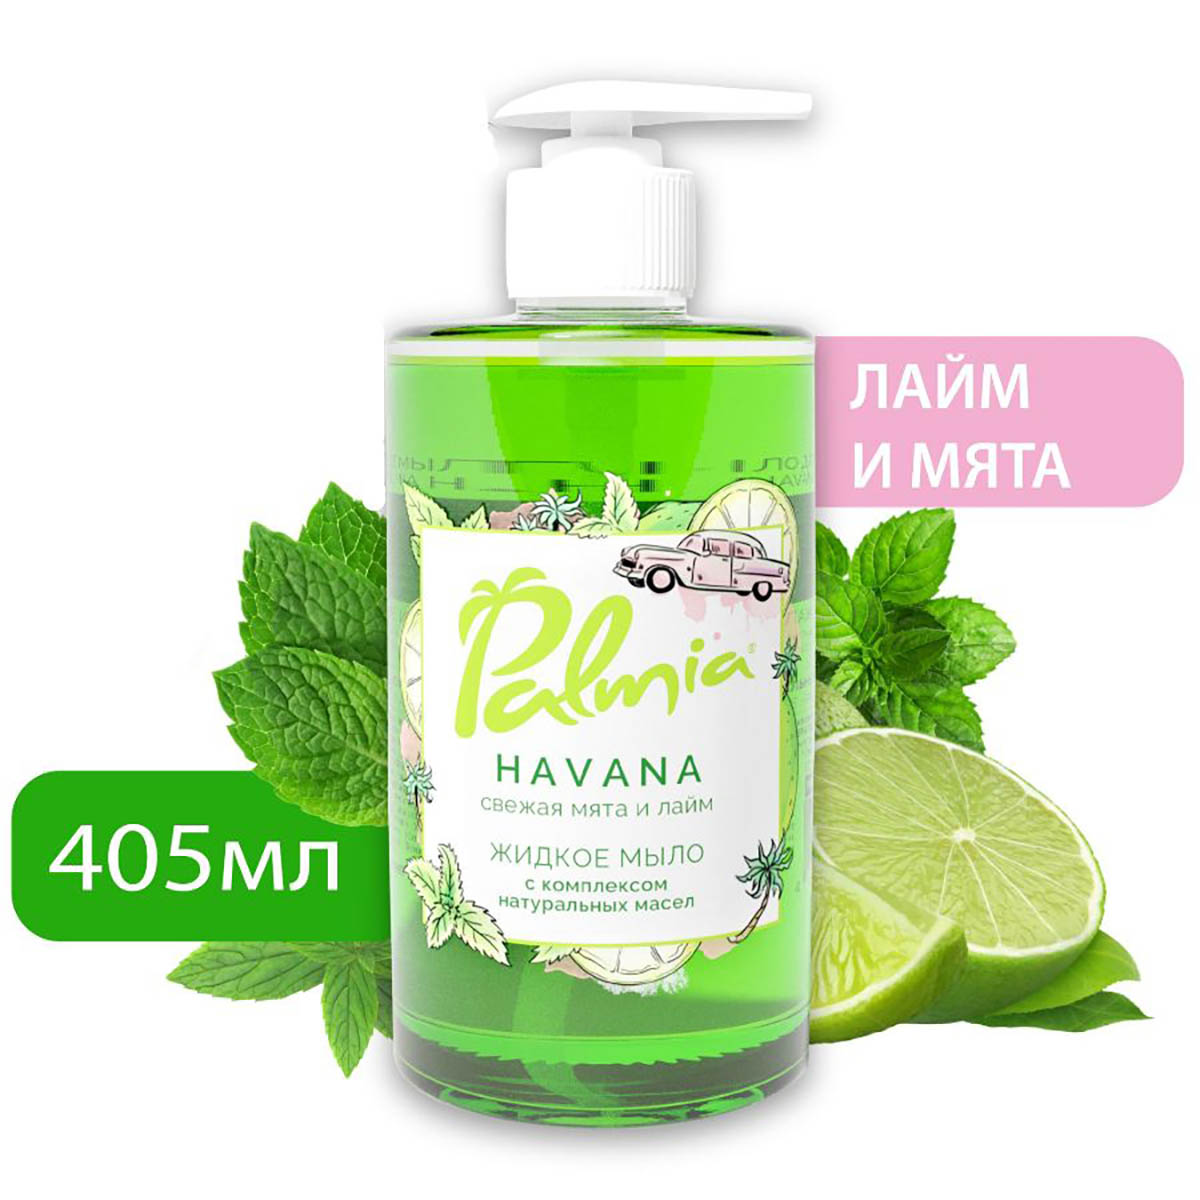 Жидкое мыло для рук Palmia Havana с комплексом натуральных масел, 405 мл остров хризантем